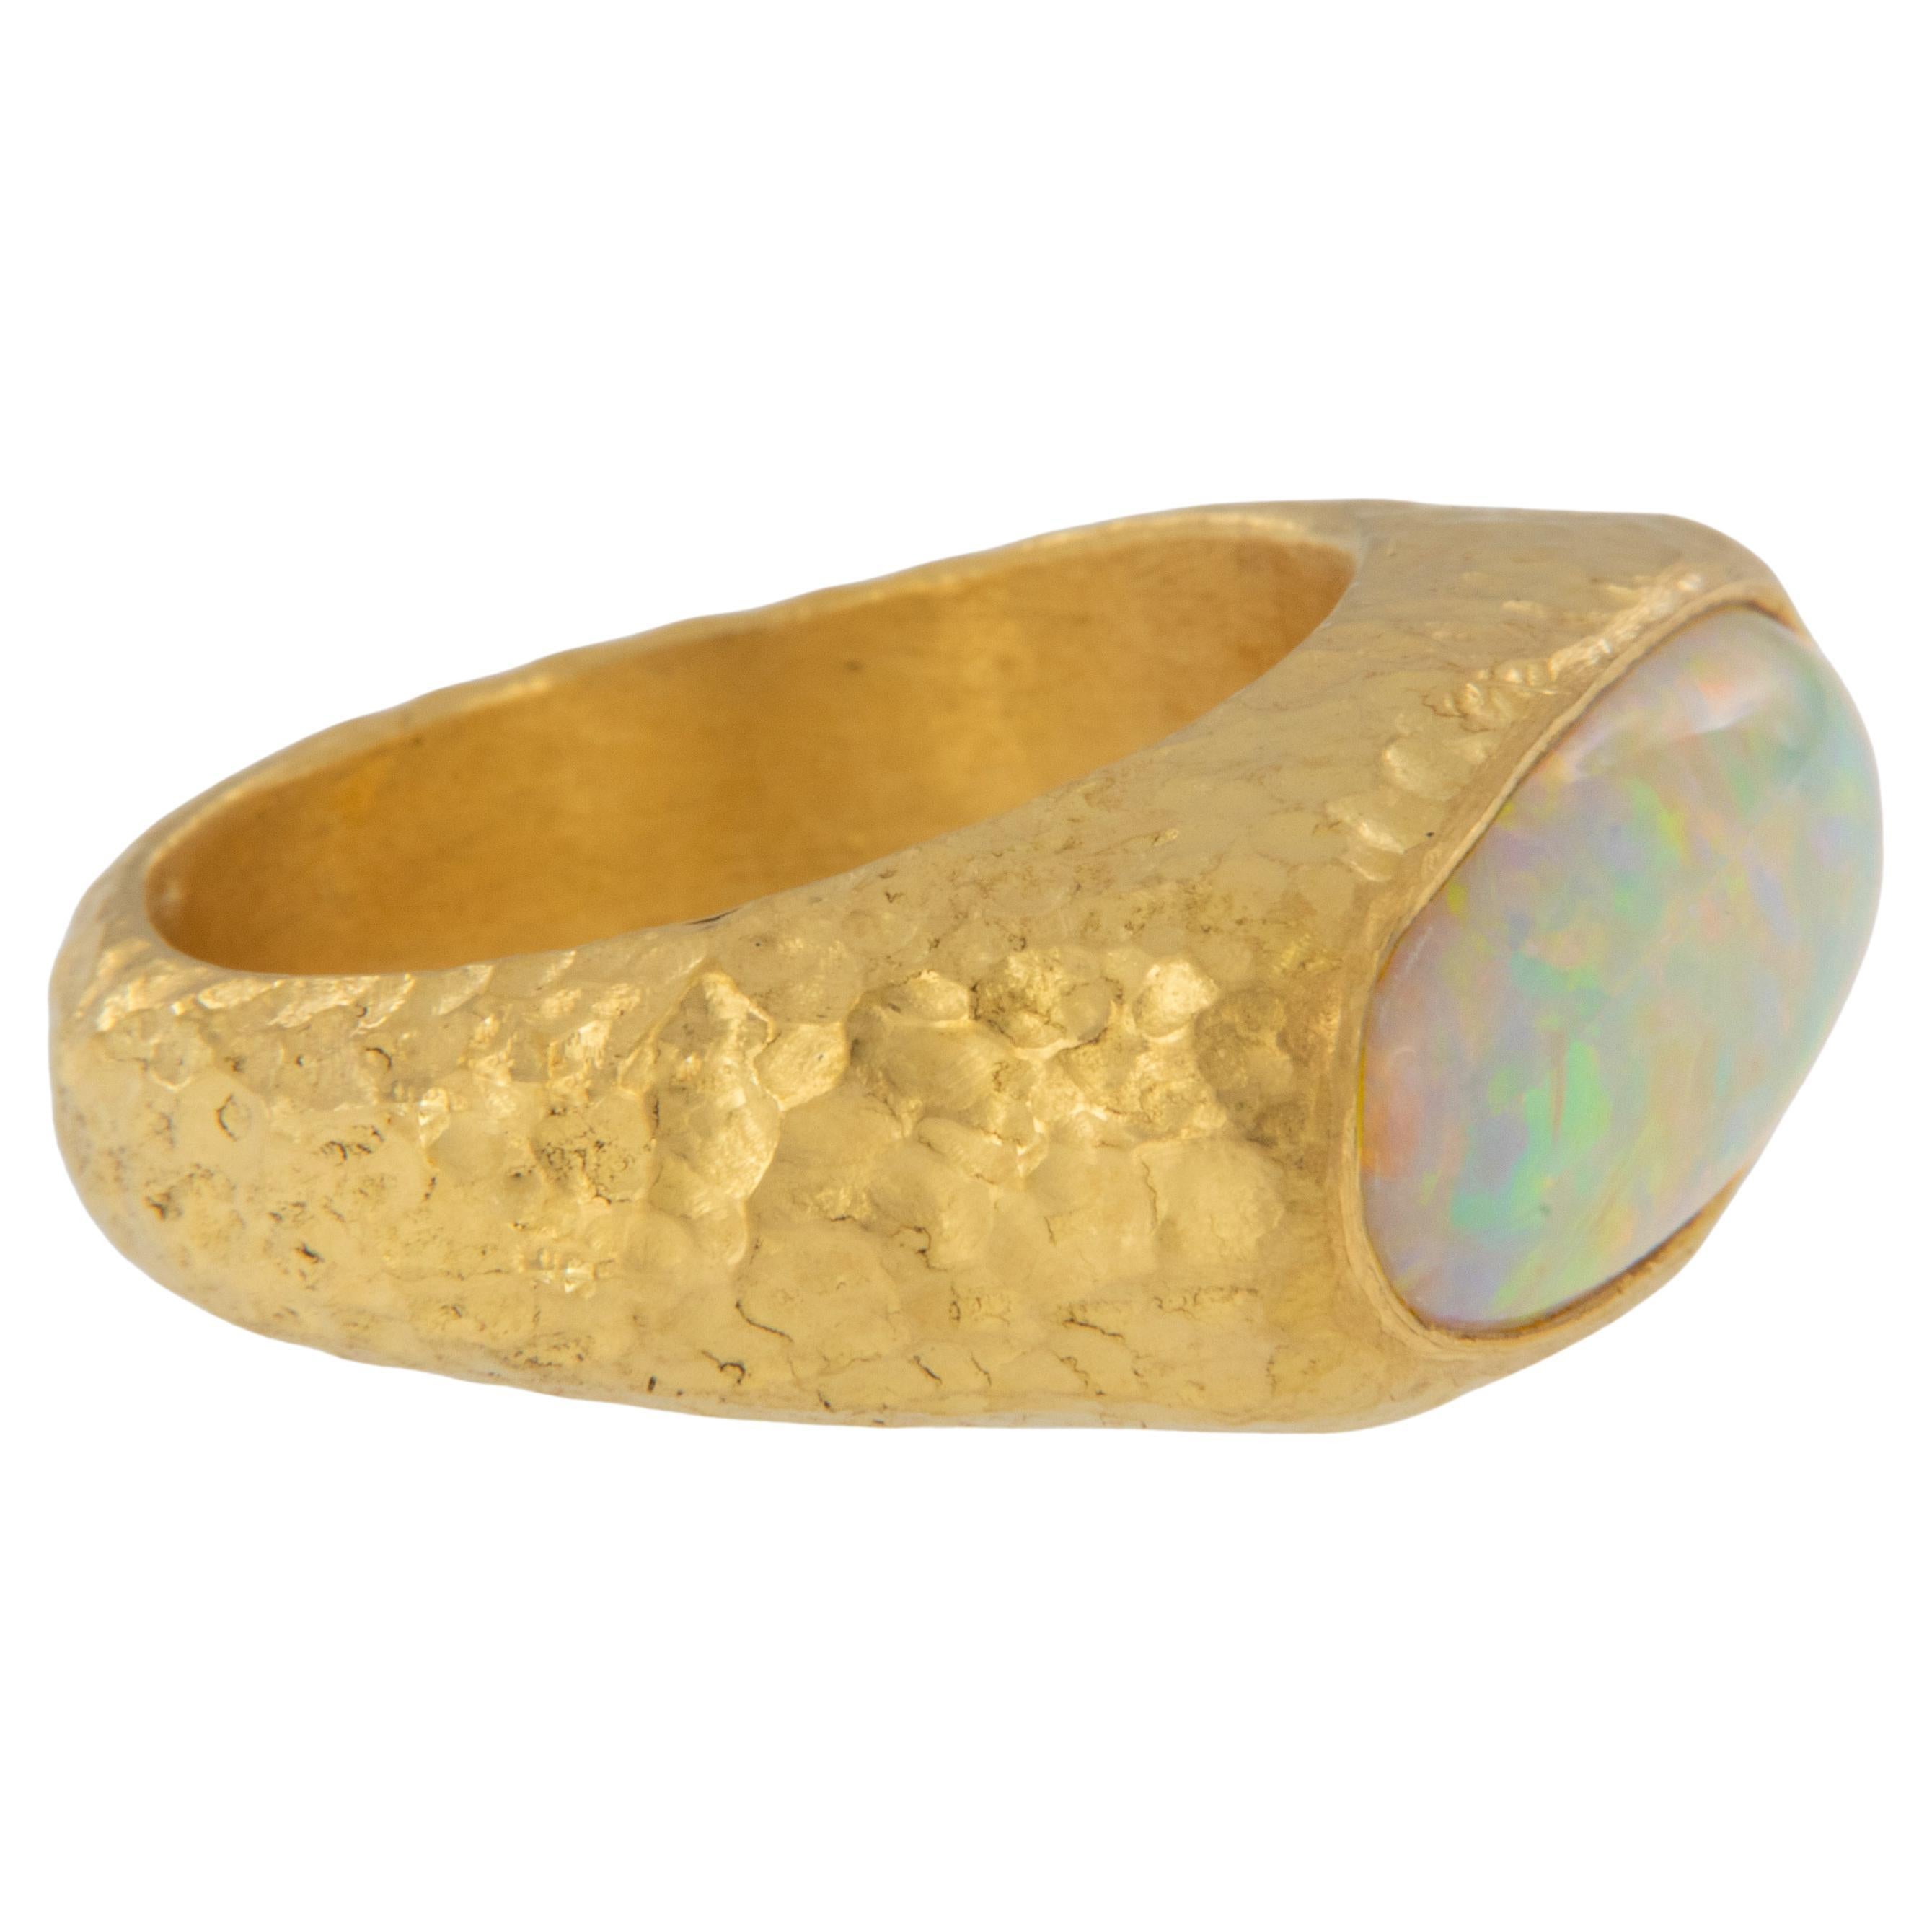 Einzigartiger Ring aus reinem 24 Karat Gelbgold mit 5,29 Karat australischem Opal